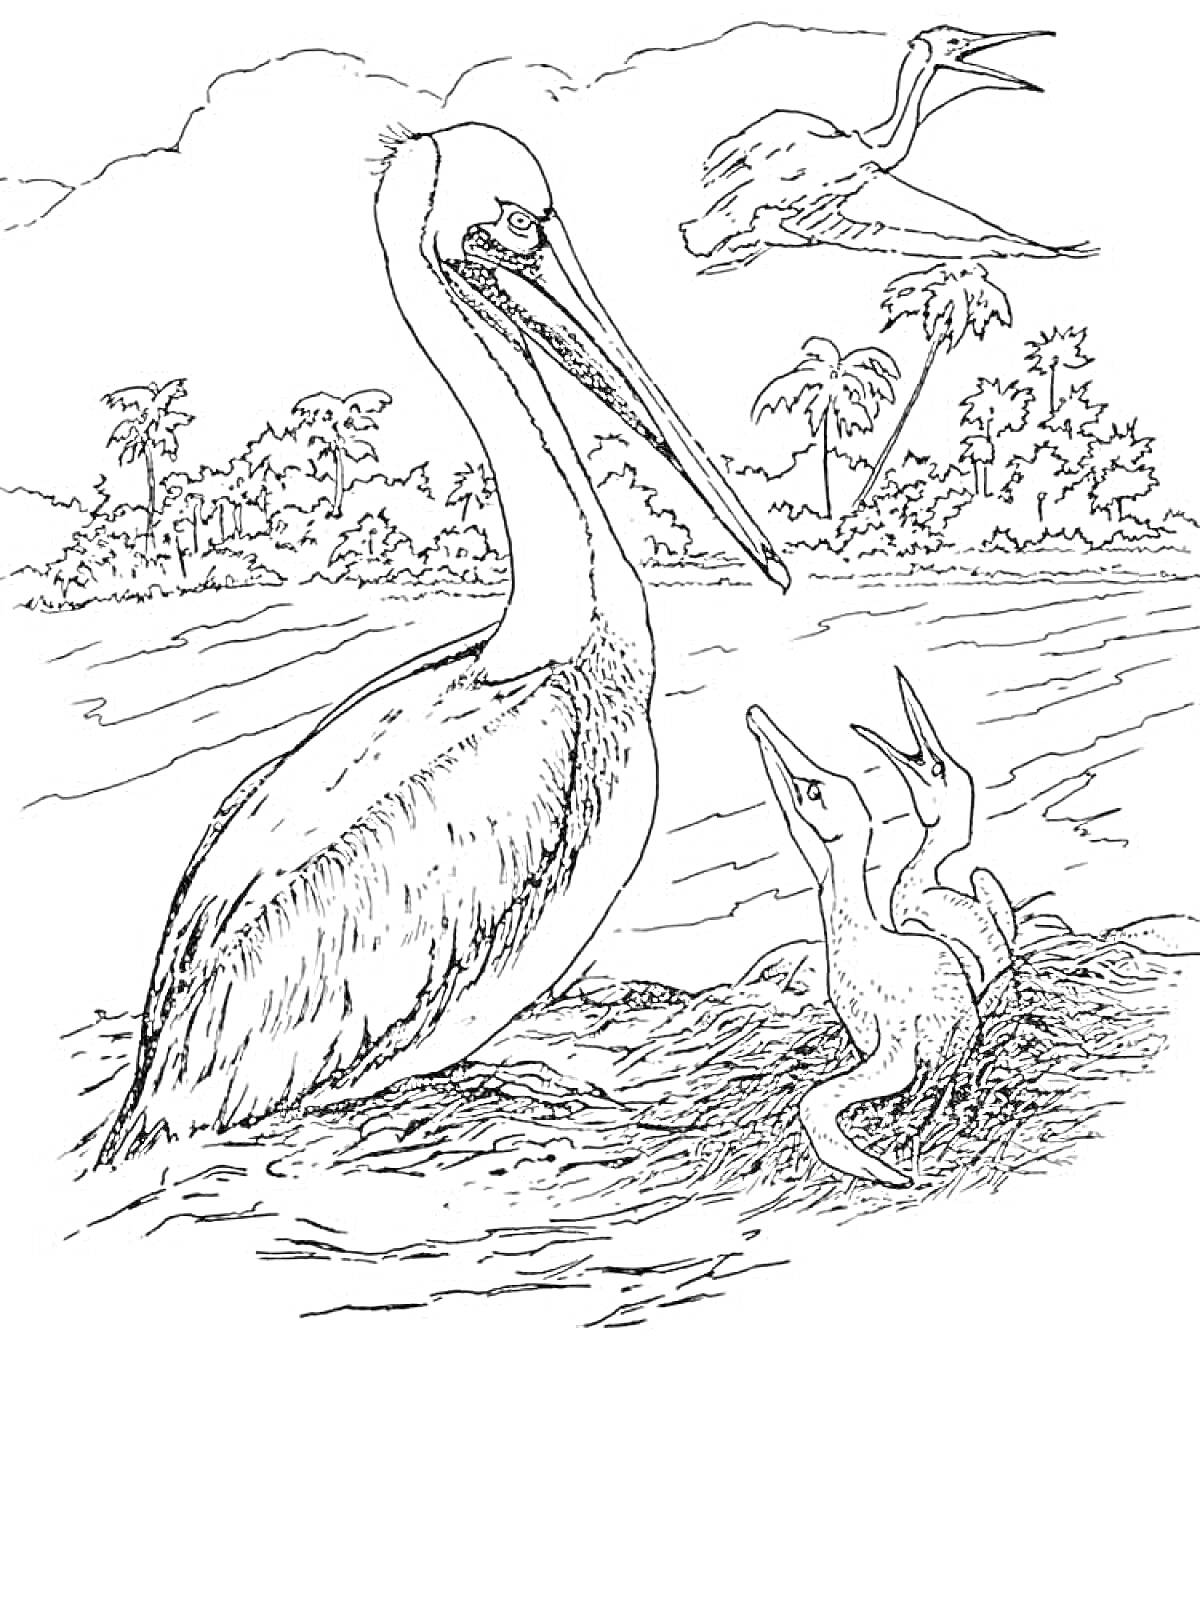 Пеликан с птенцами у воды и летящий пеликан на фоне деревьев